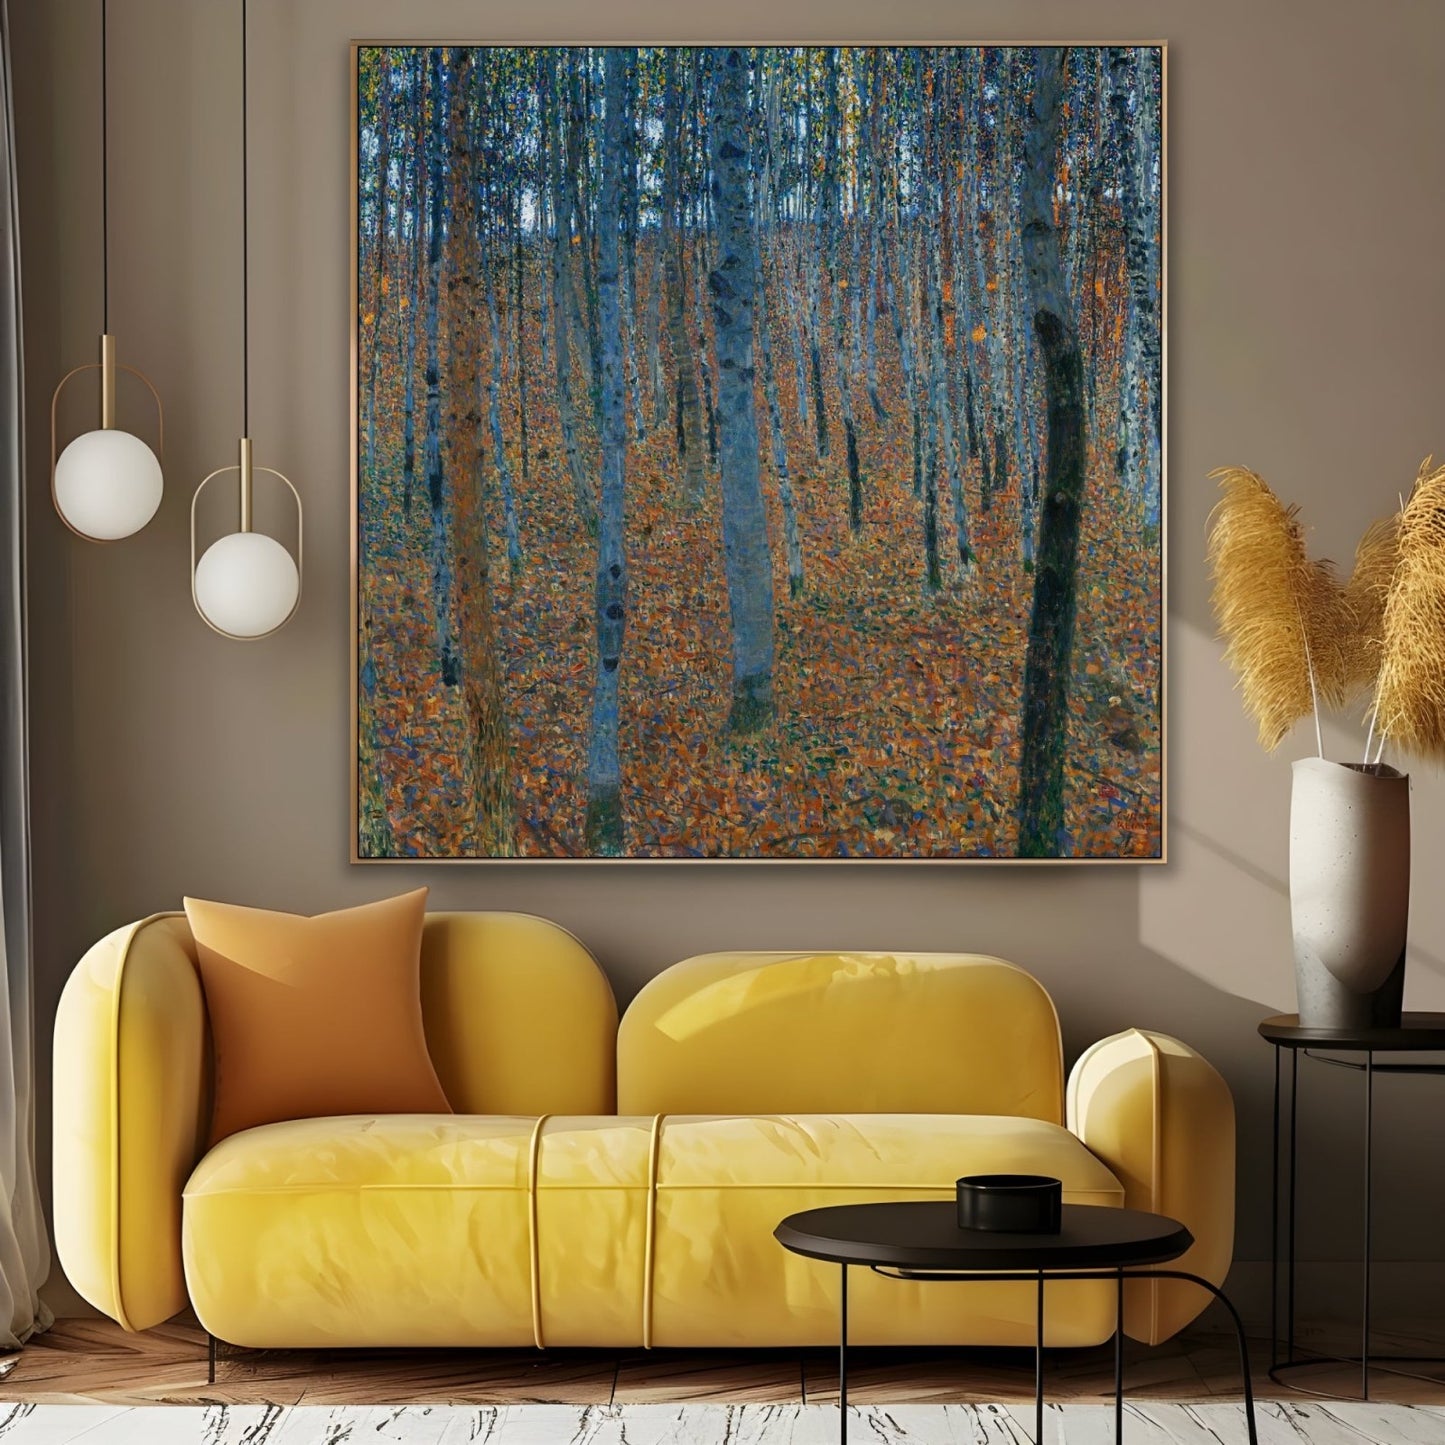 Birch forest - Gustav Klimt